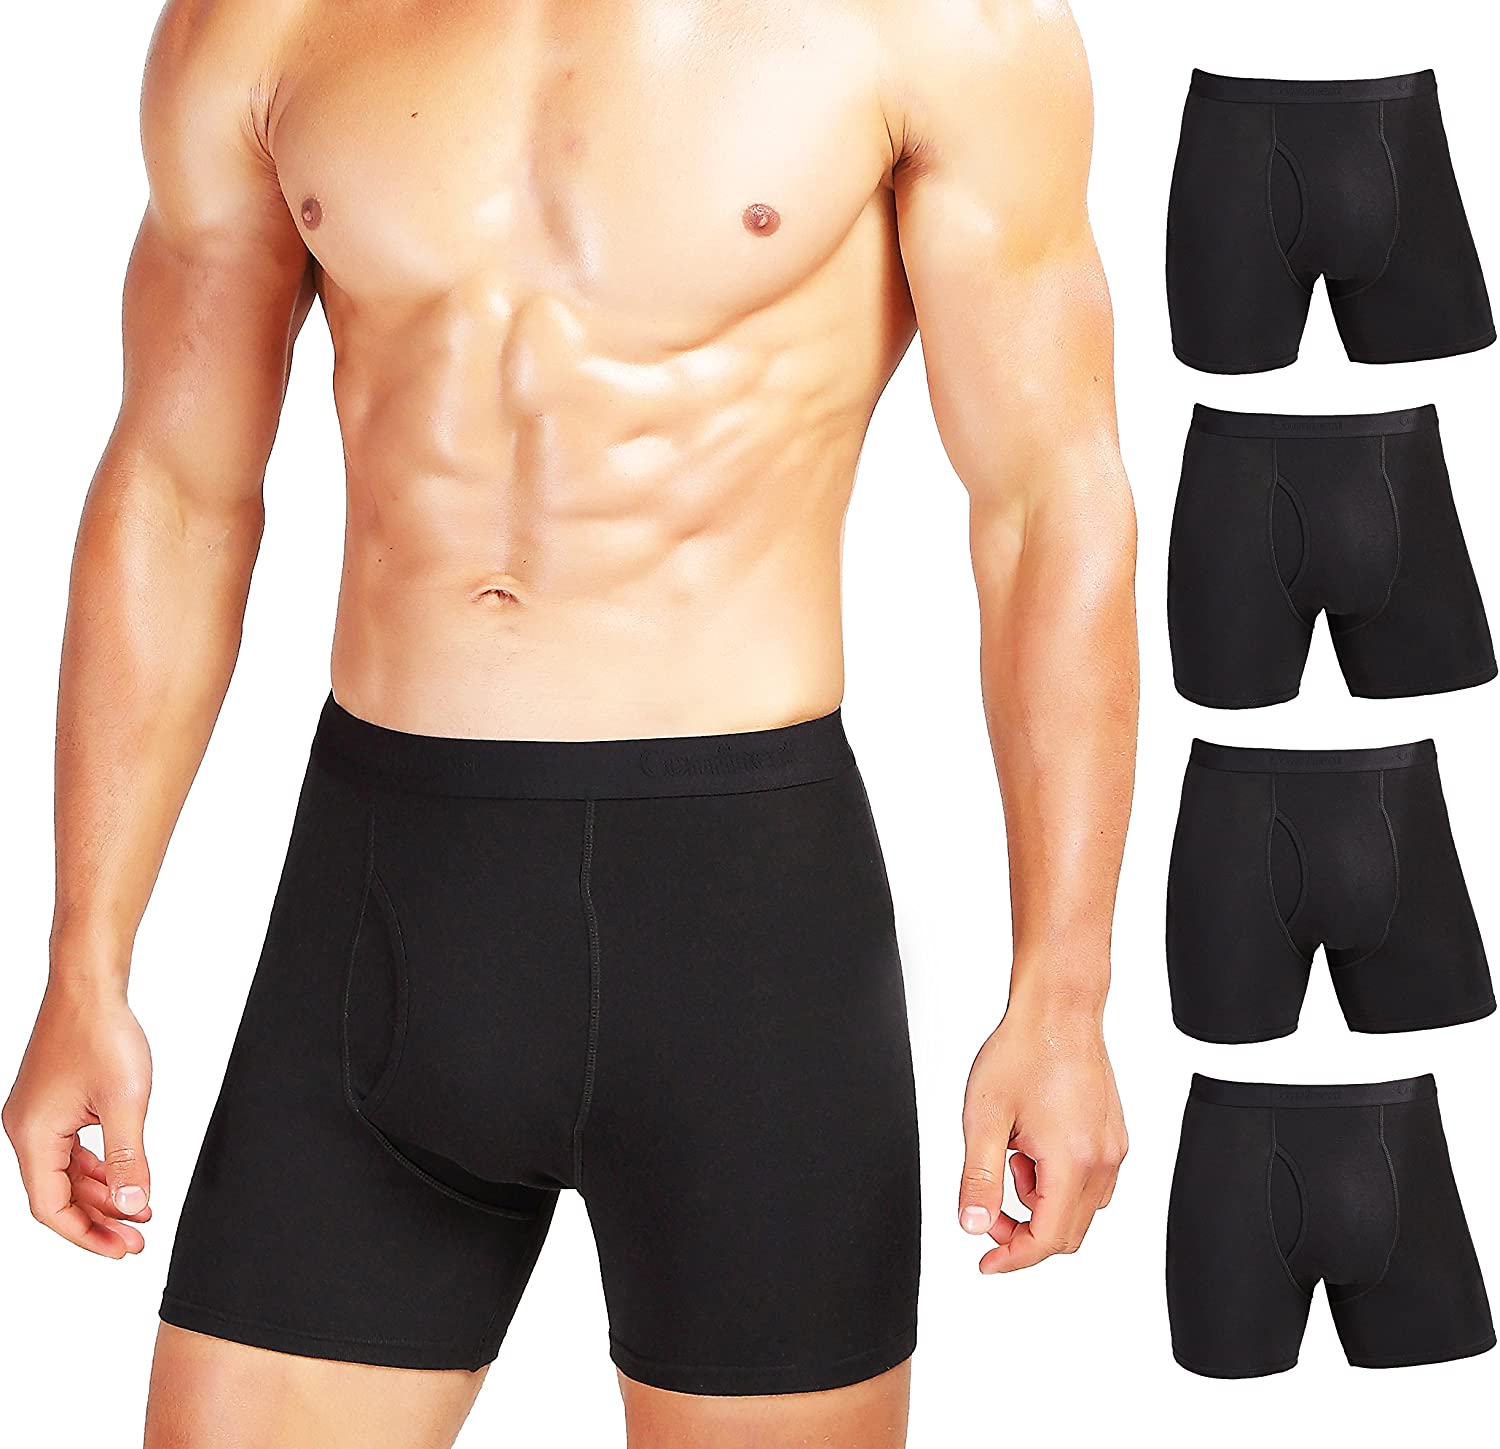 Boxer Shorts 3 Pcs 95% Comfortable Cotton Men Underwear Panties Shorts  Men's Cotton Underpants Breathable Intimate Man Boxers Large Size Men's  Fitted